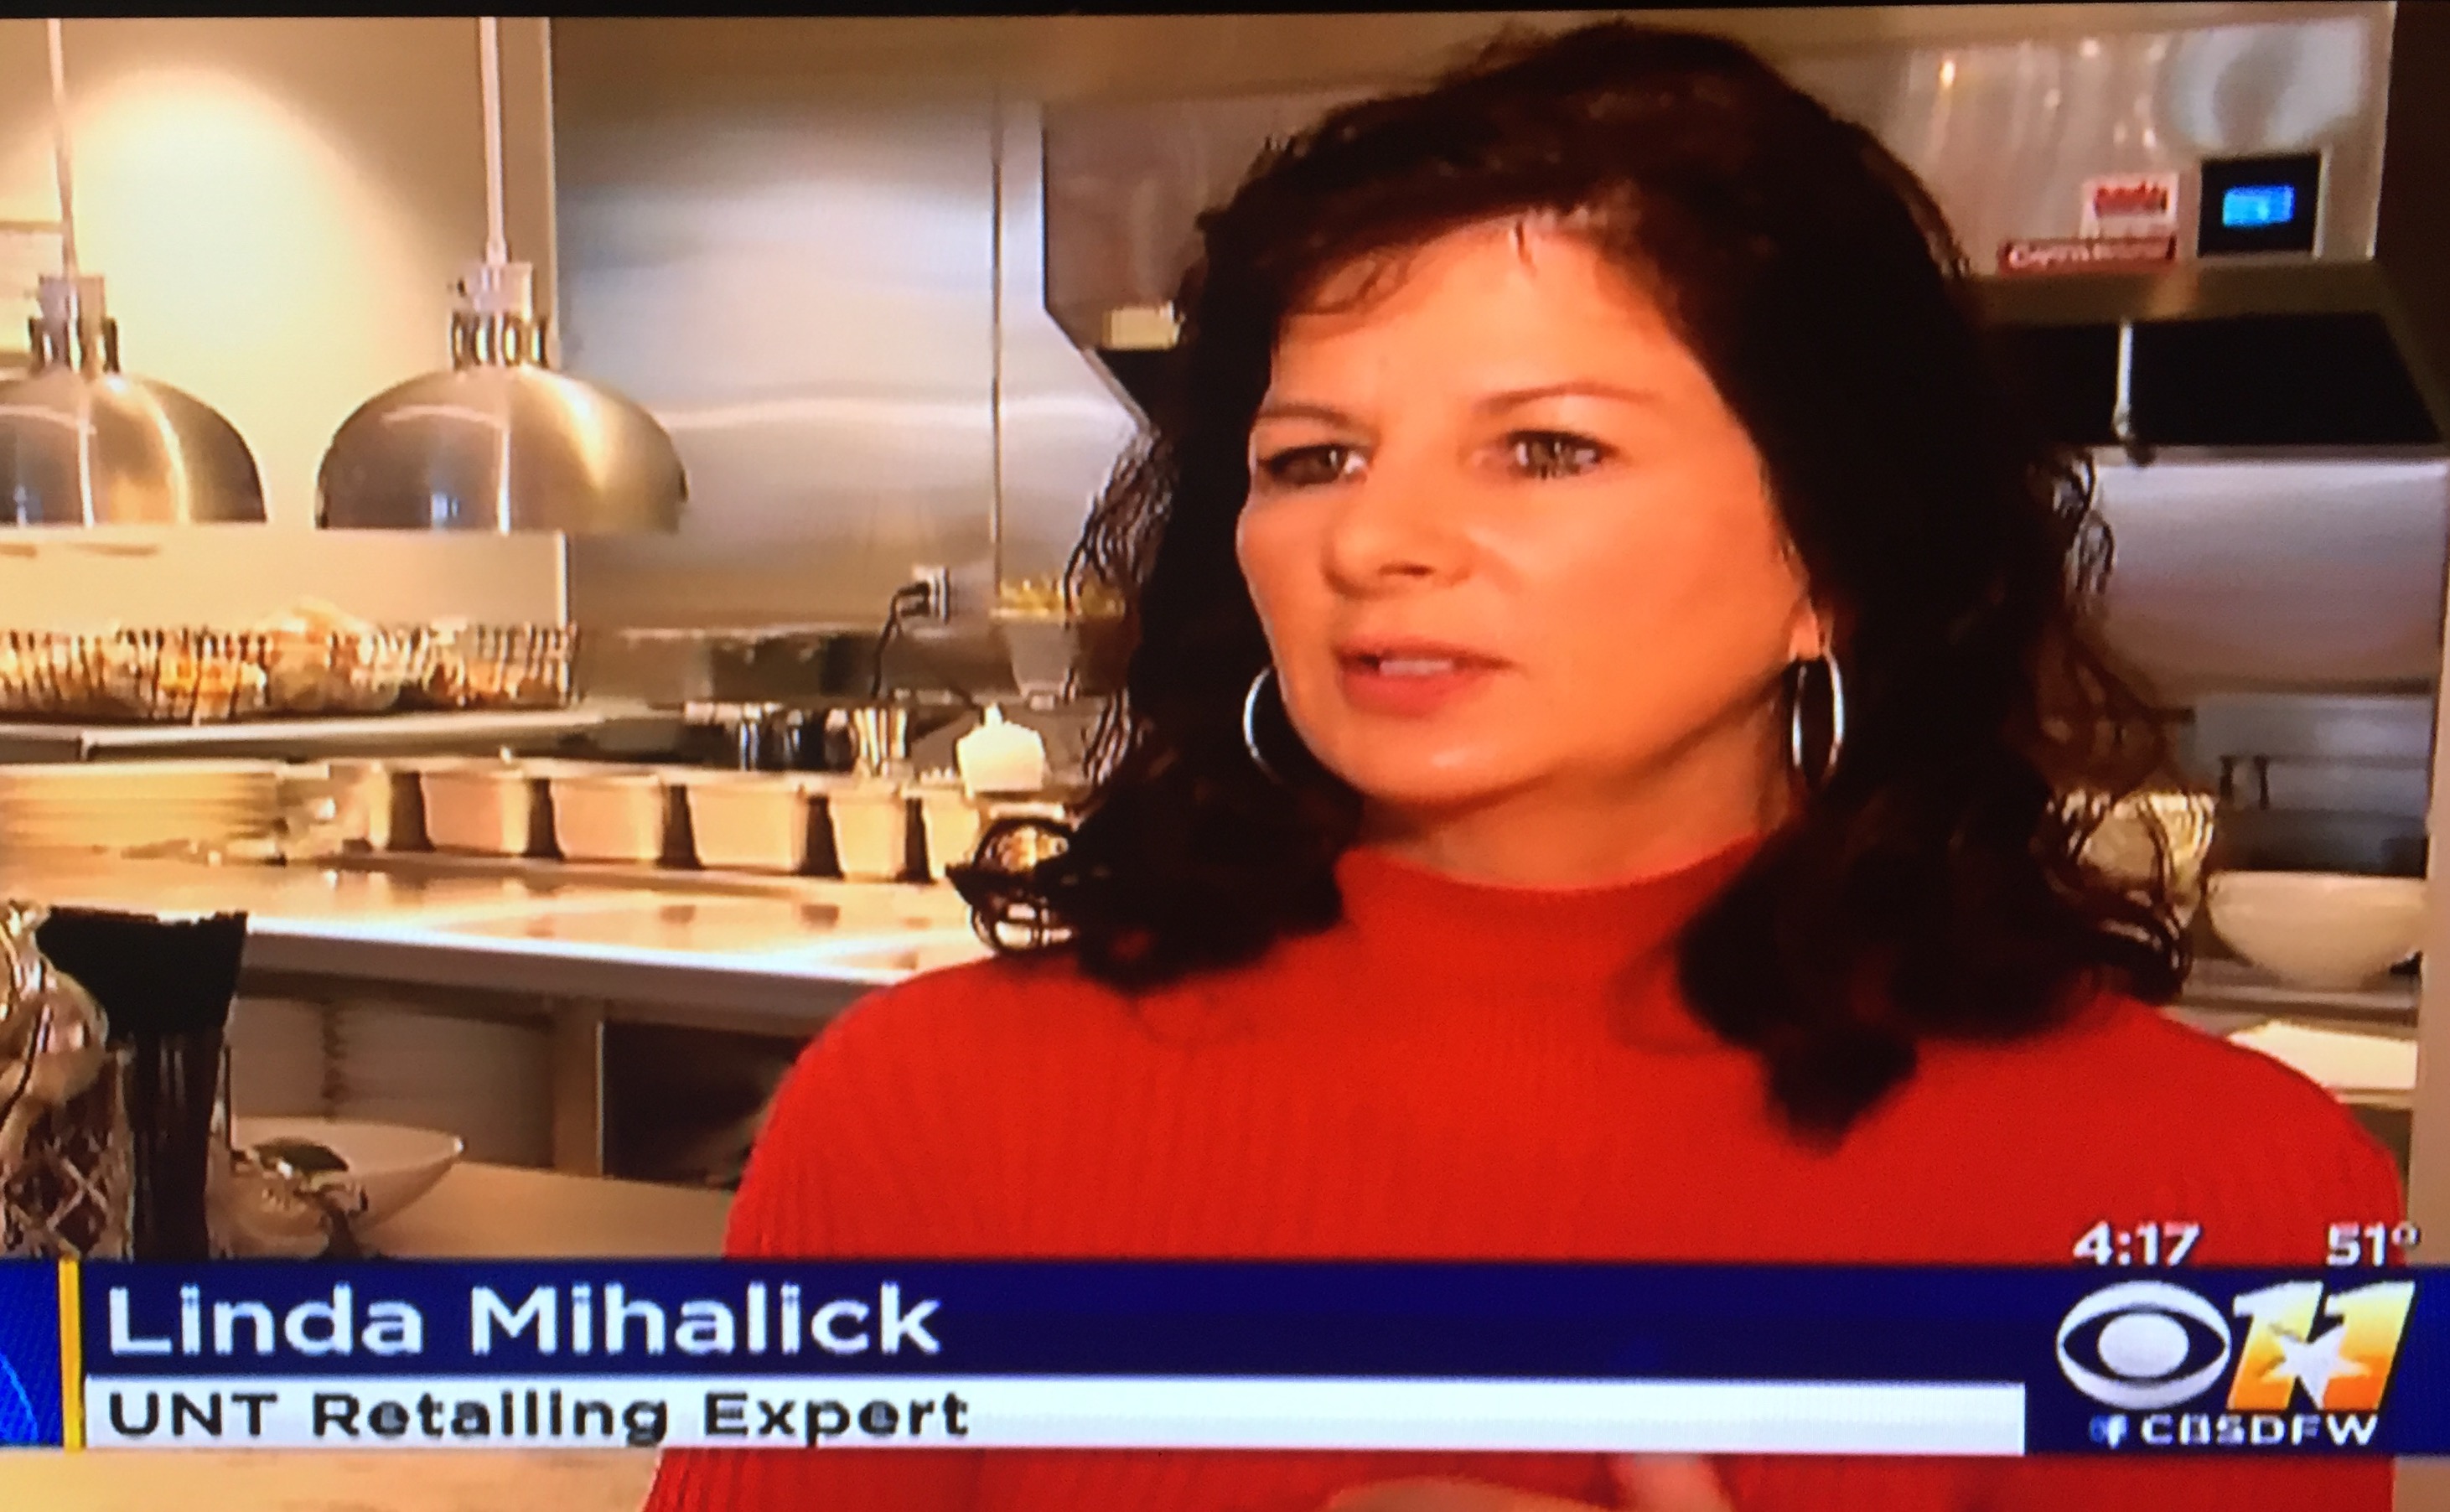 Gilma Avalos Instant Pot CBS 11 News Linda Mihalick